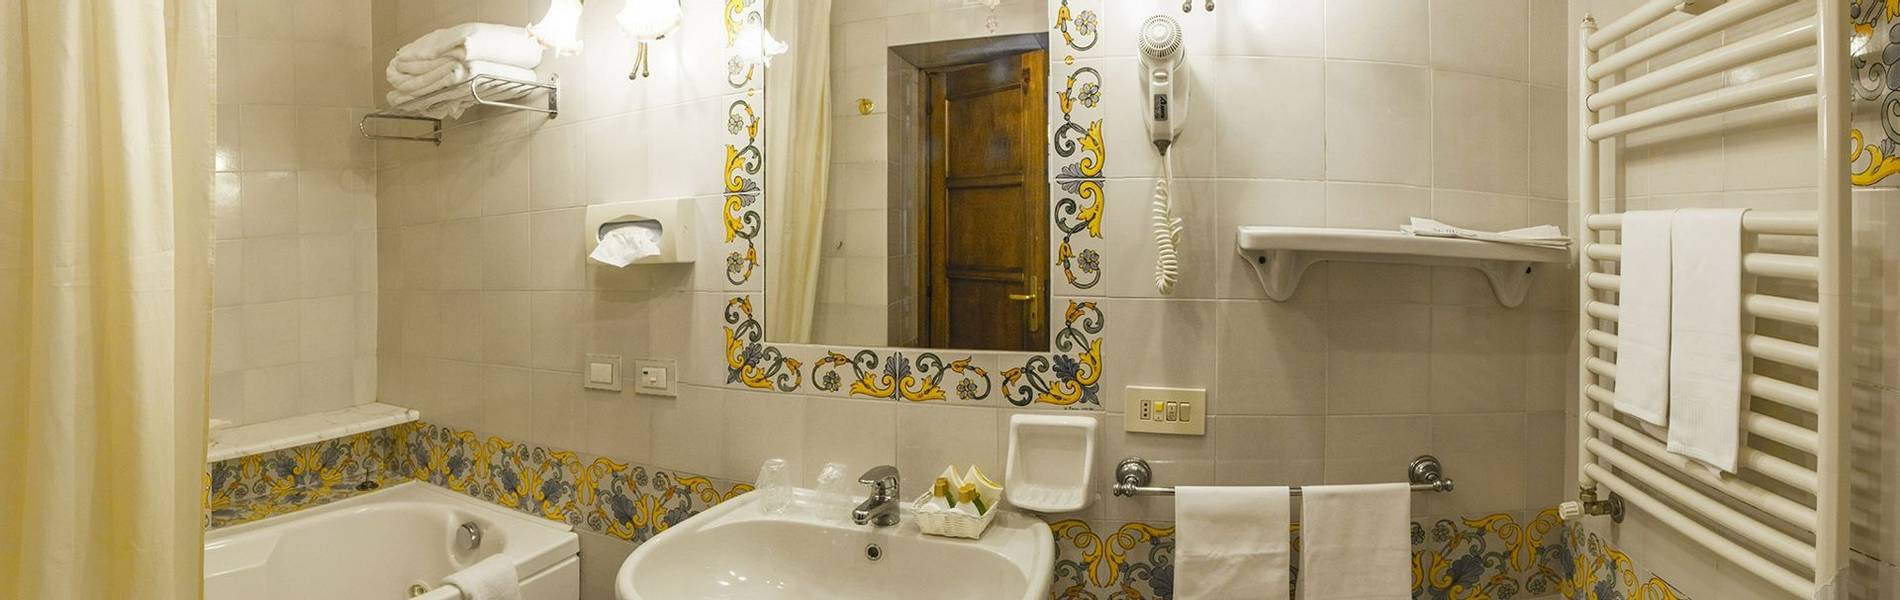 Villa Maria, Amalfi Coast, Italy, Bathroom.jpg